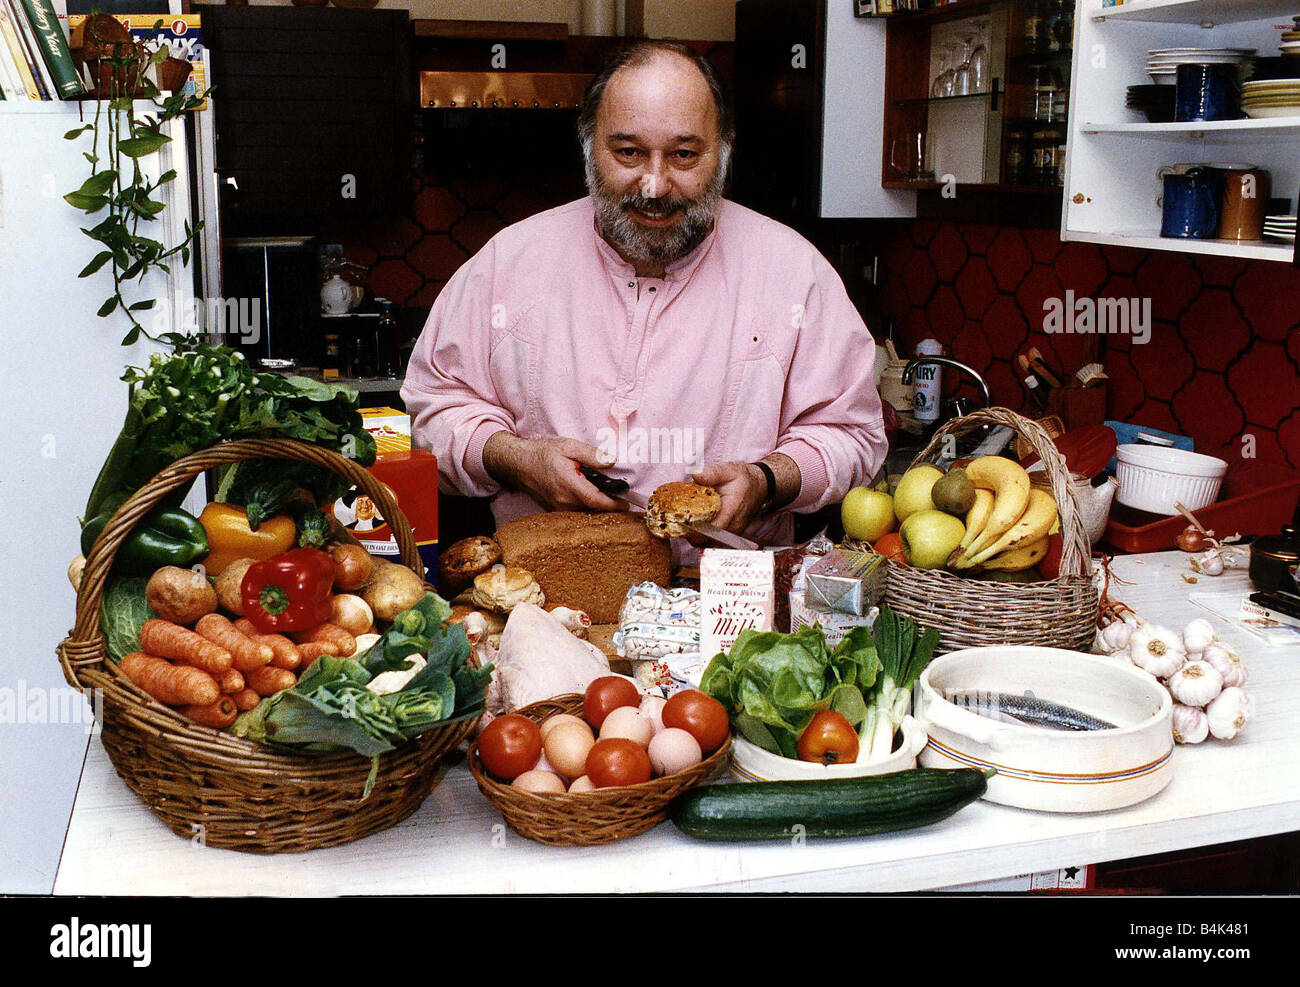 Michael Van Stratten food expert Author Stock Photo